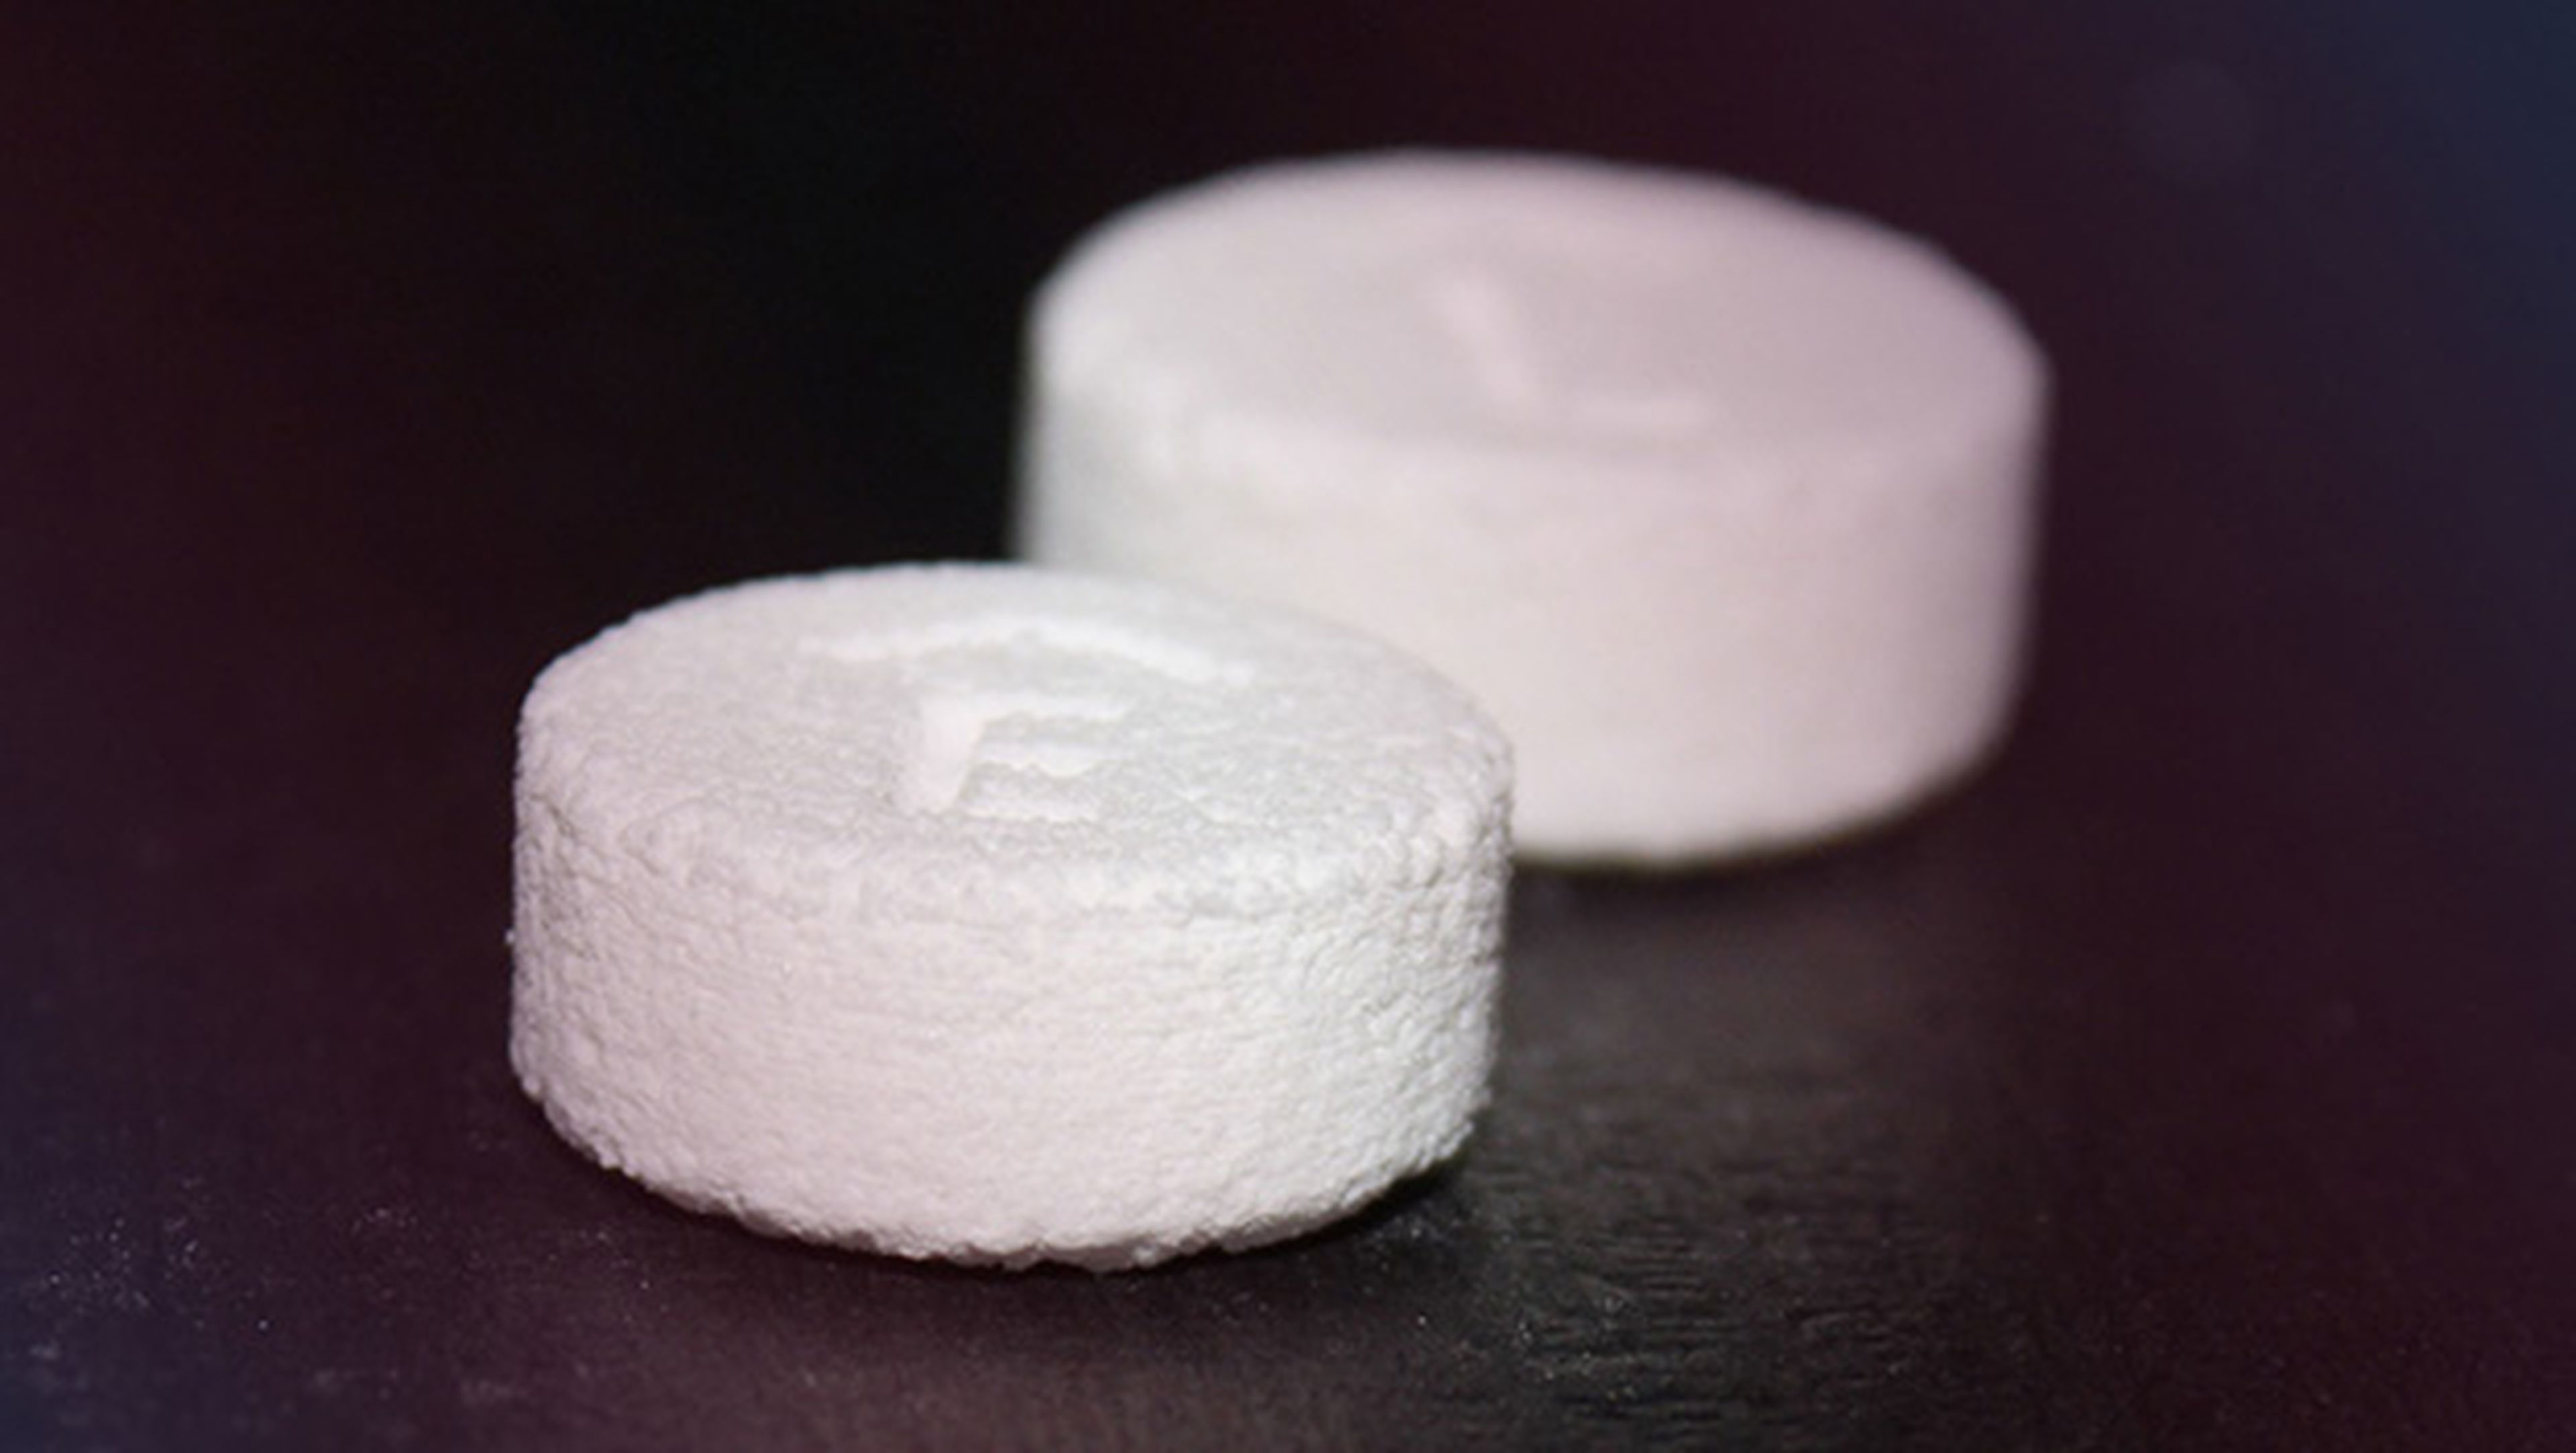 Estados Unidos aprueba la primera pastilla impresa en 3D